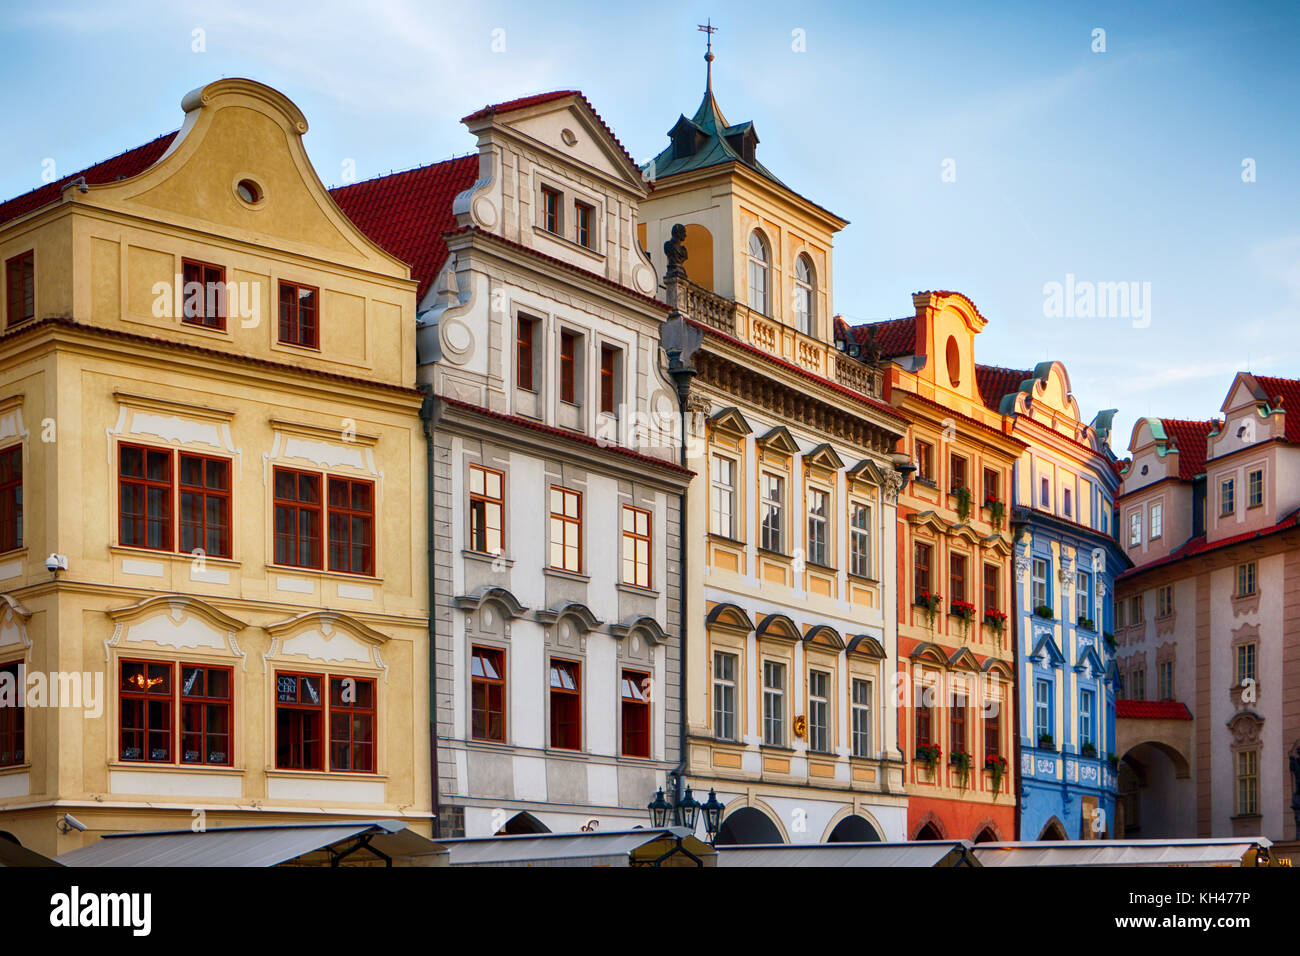 Ángulo de visión baja de coloridas casas en la plaza de la ciudad vieja de Praga, República Checa Foto de stock